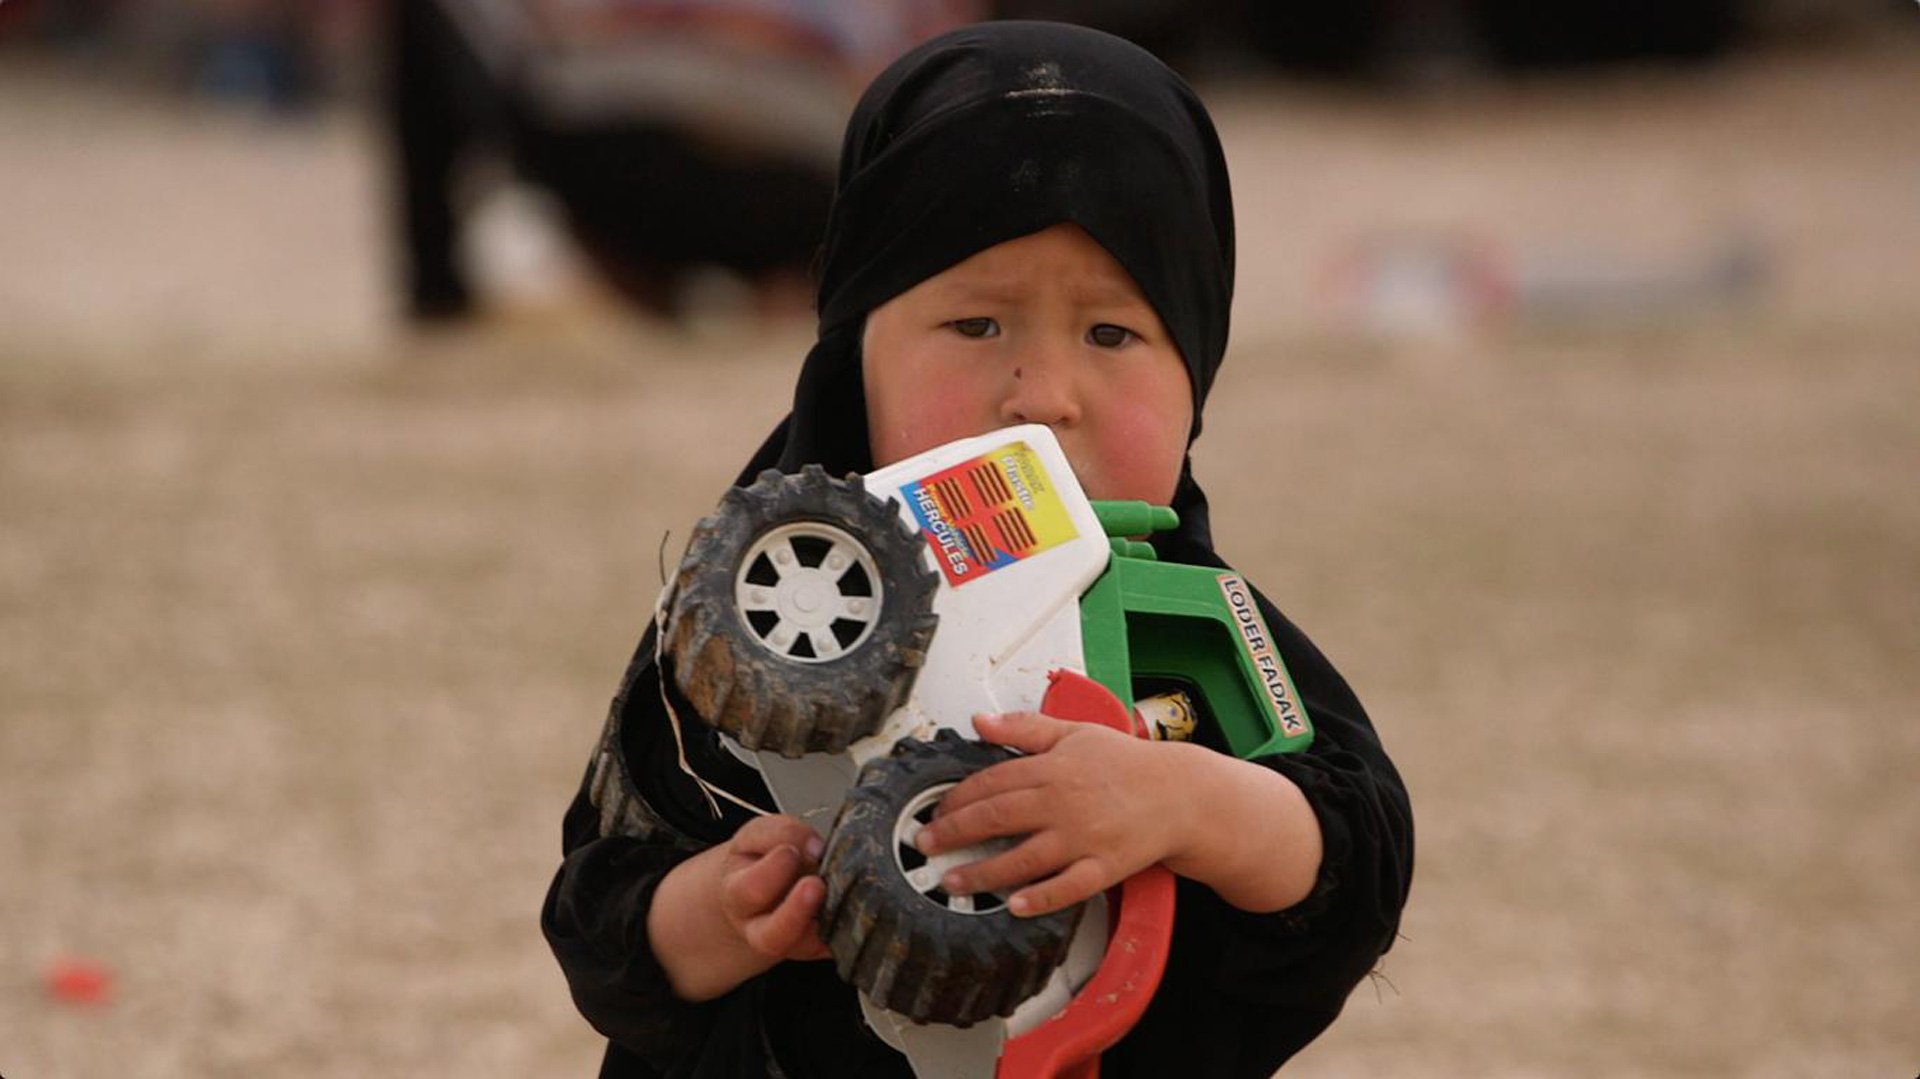 تنظيم الدولة: النسوة والأطفال الذين تخلى عنهم العالم